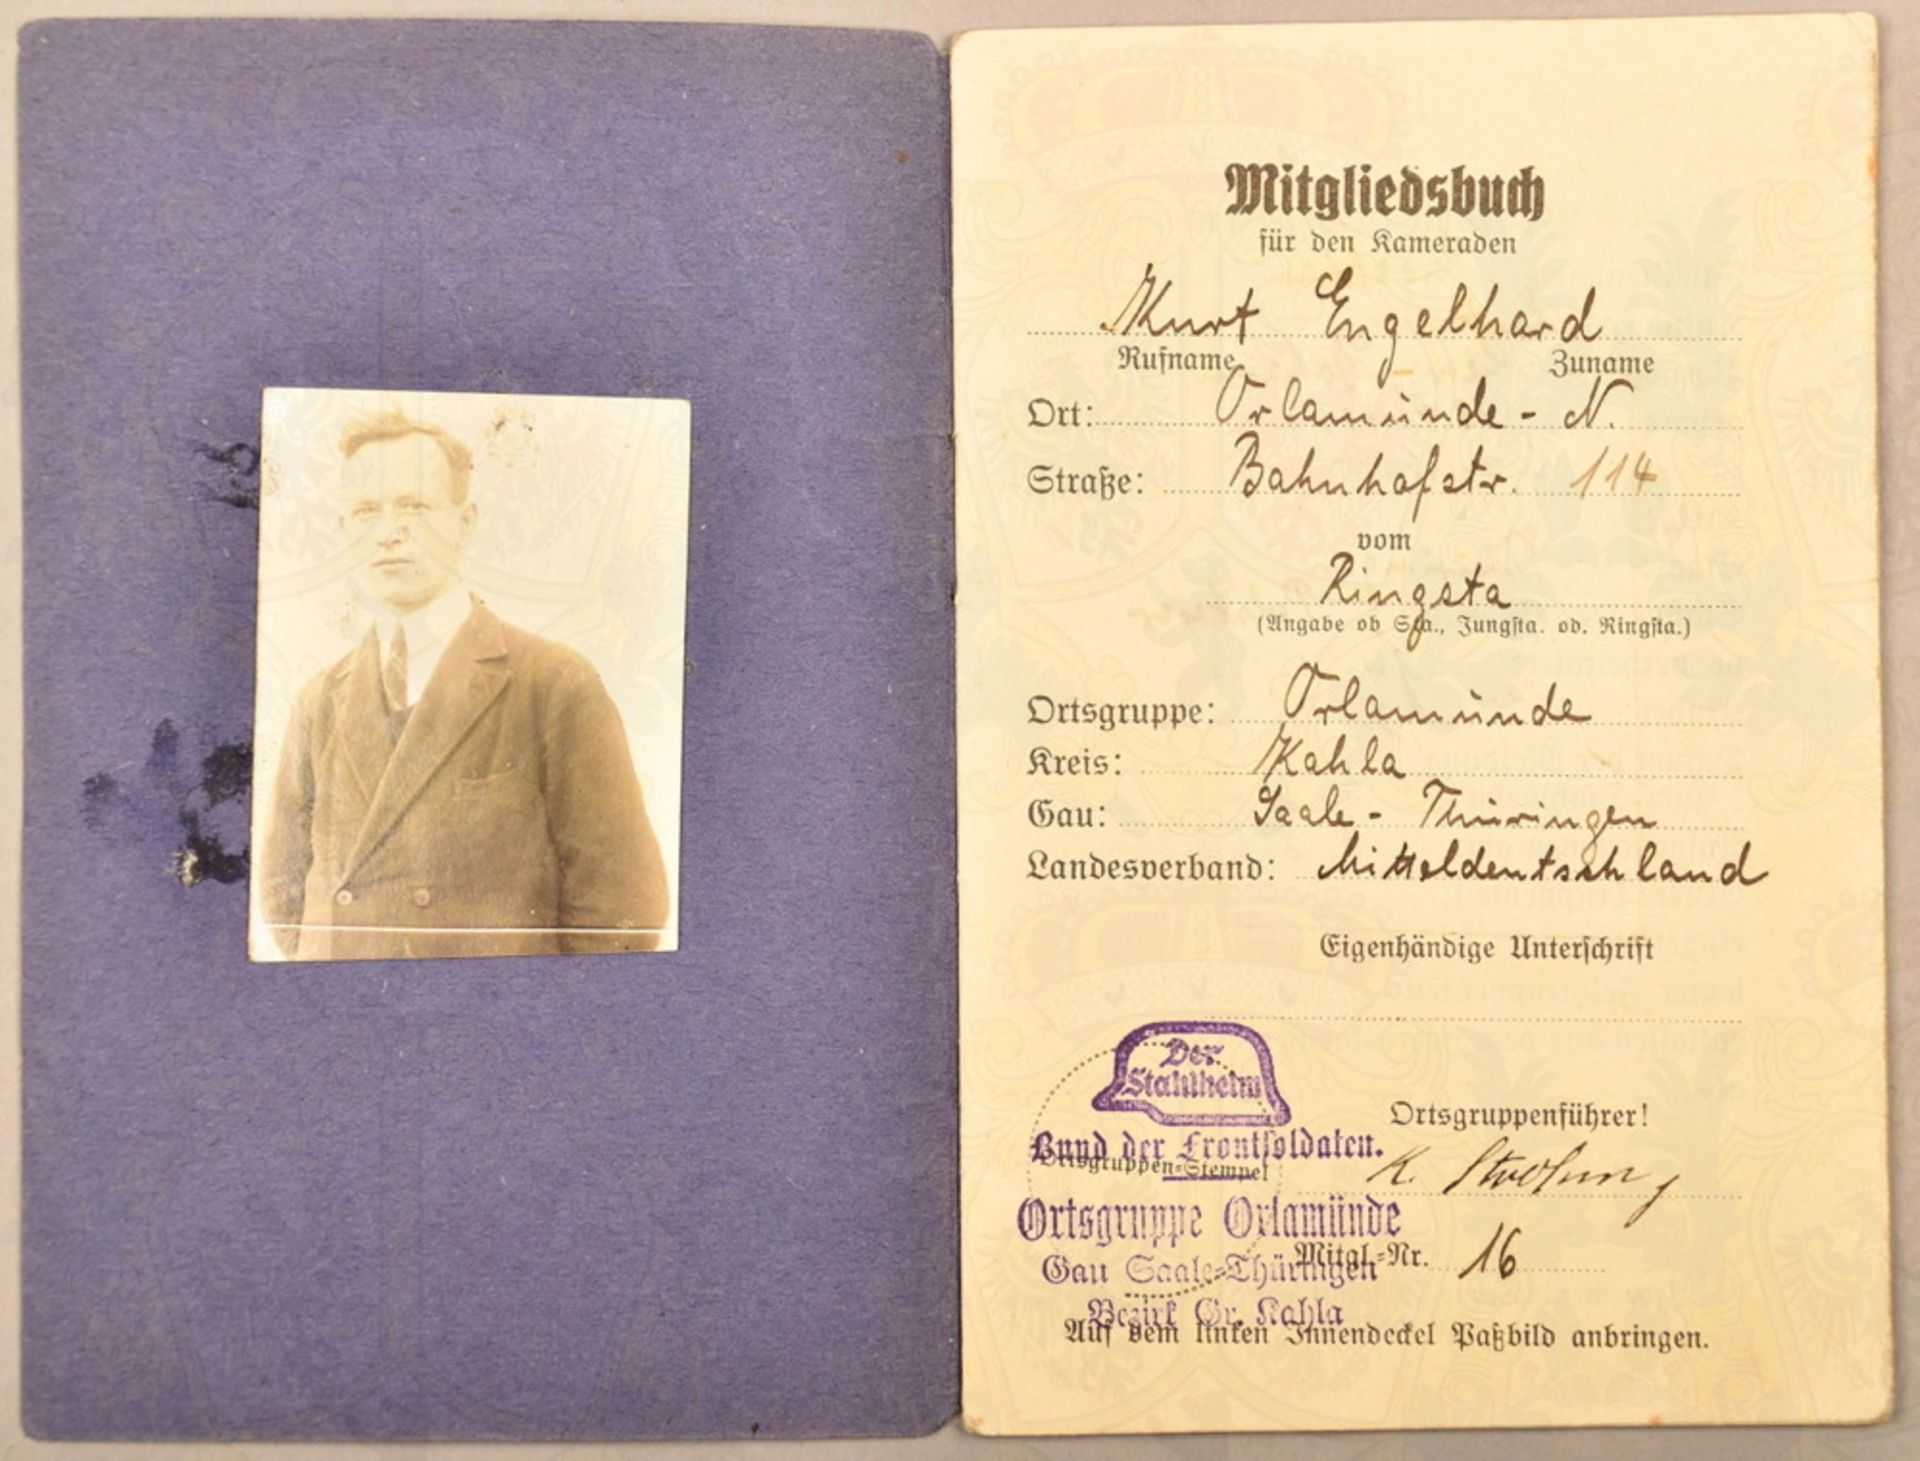 Mitgliedsbuch und Urkunde Ehrhardtnadel - Image 2 of 2